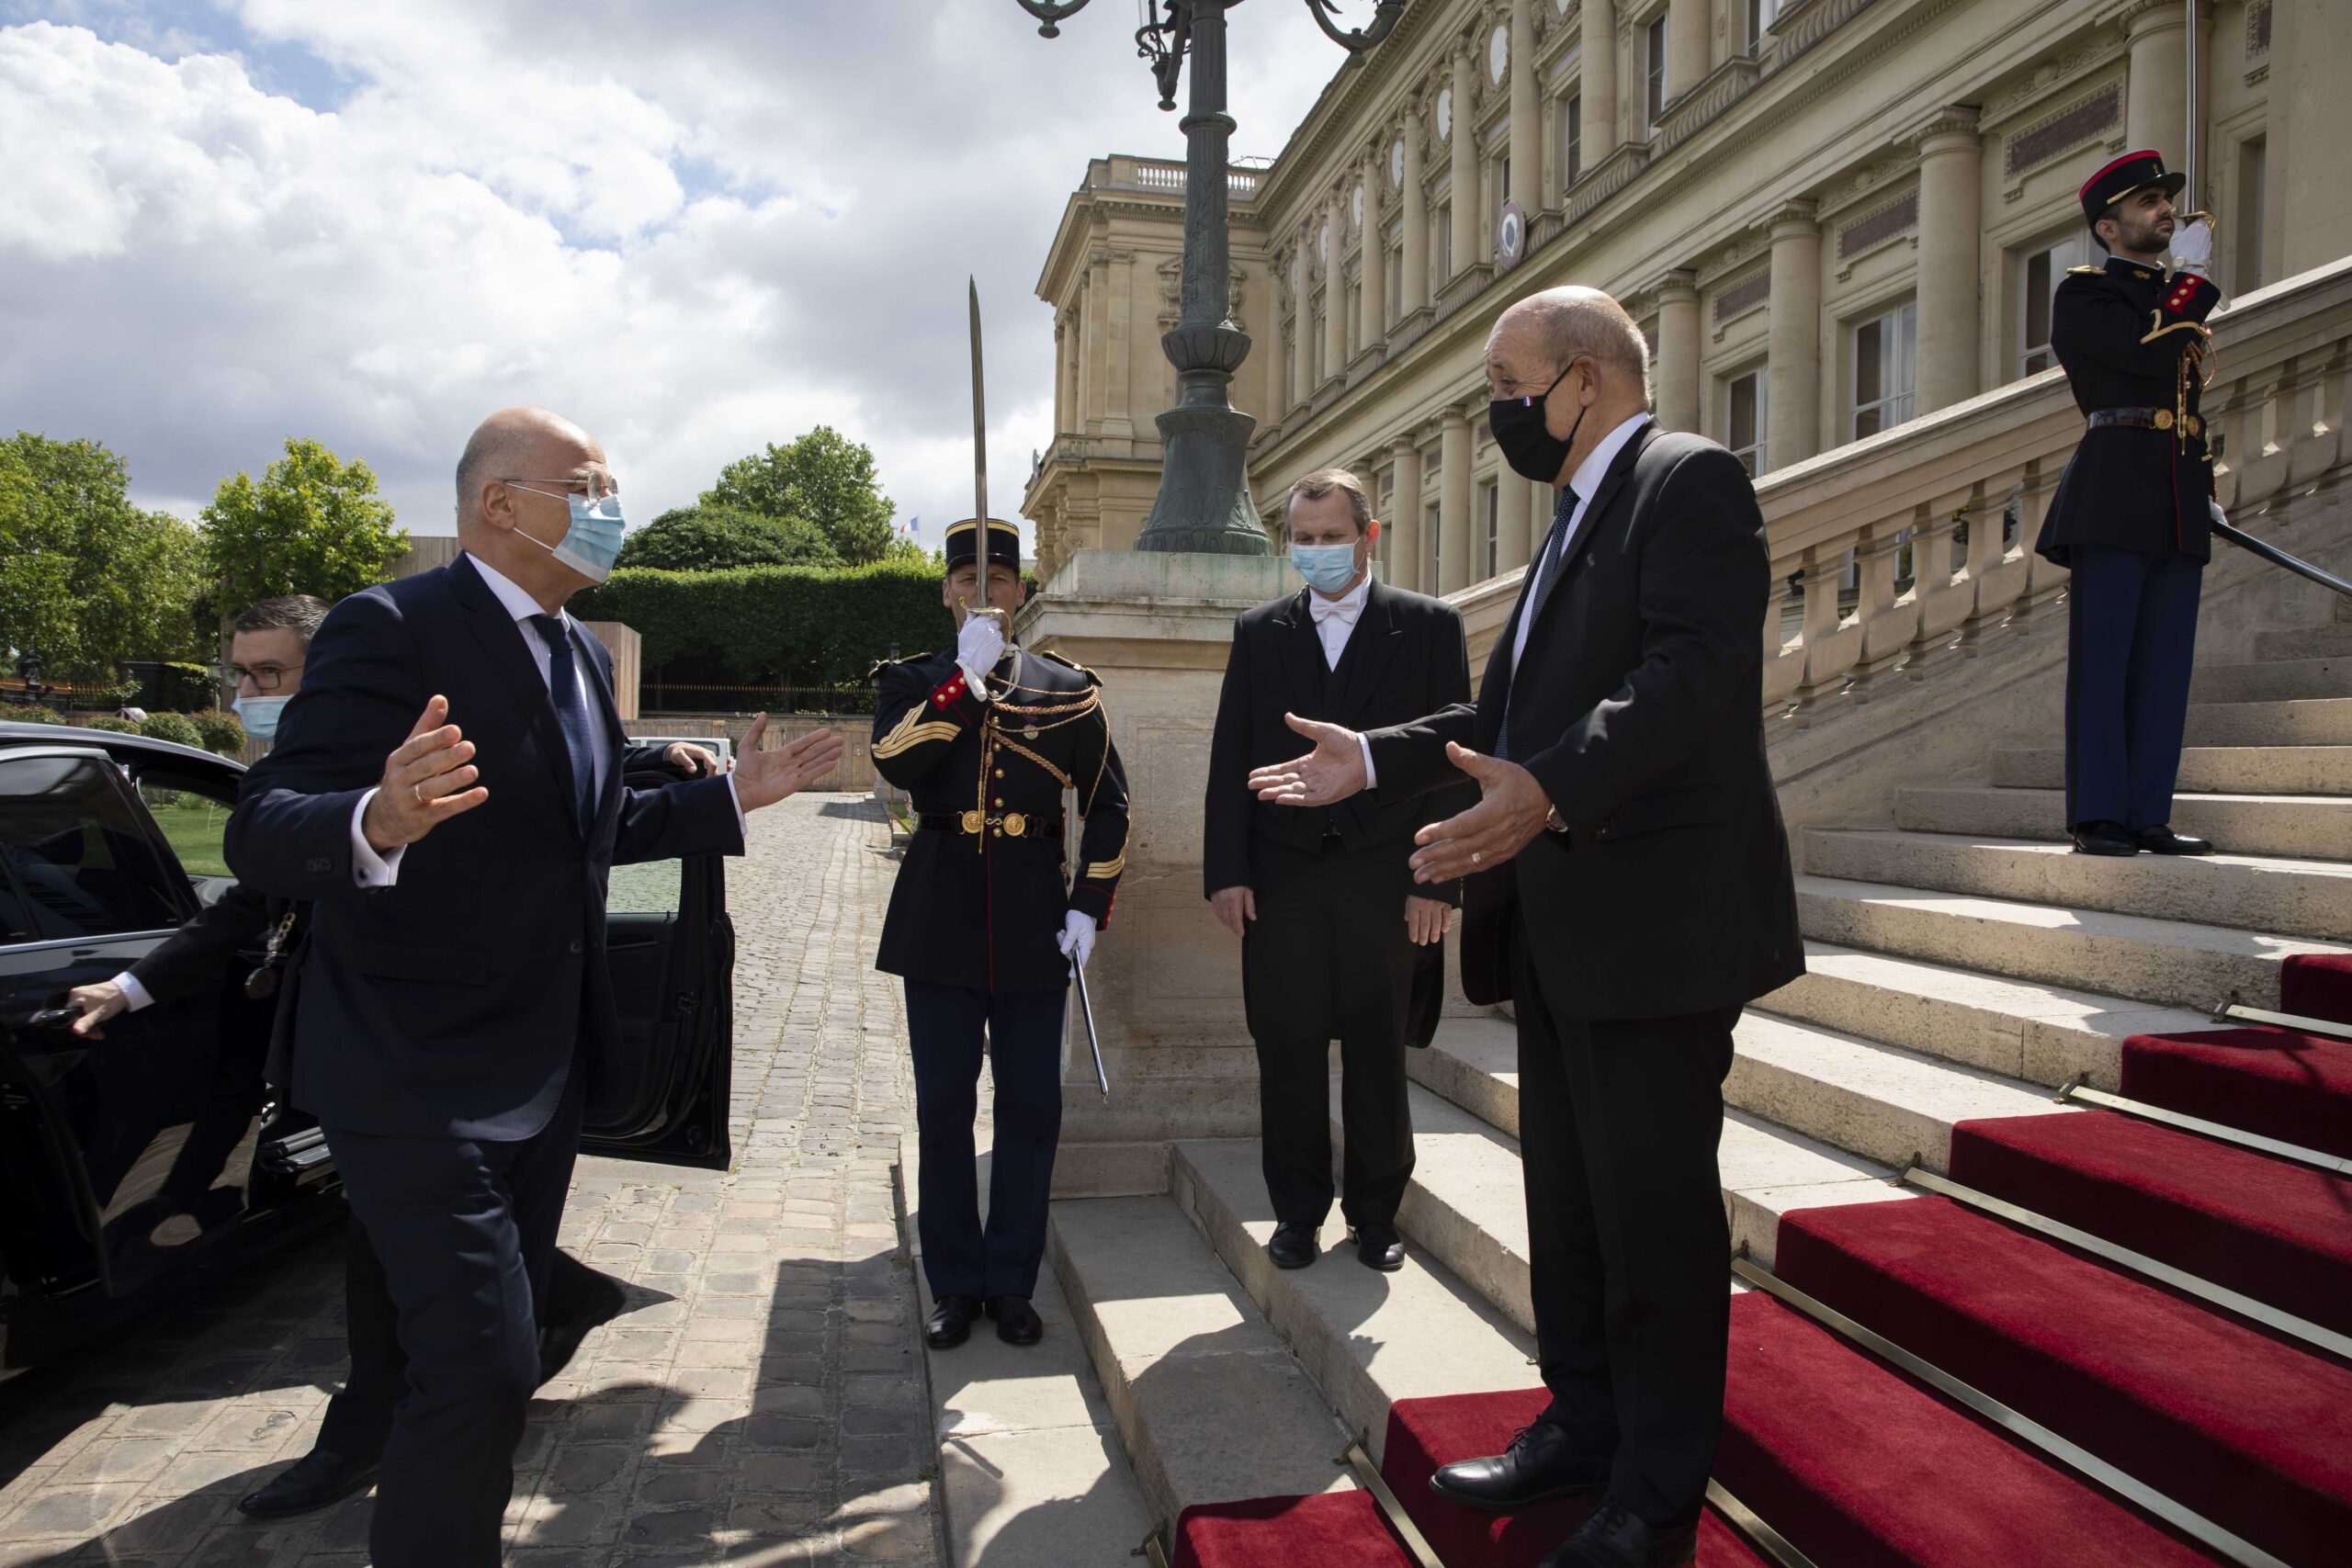 (Ξένη Δημοσίευση)  Ο Γάλλος υπουργός Εξωτερικών Jean-Yves Le Drian (Δ) υποδέχεται τον υπουργό Εξωτερικών Νίκο  Δένδια (Α), κατά τη διάρκεια της συνάντησής τους, τη Δευτέρα 15 Ιουνίου 2020, στο Παρίσι.   Ο υπουργό Εξωτερικών Νίκος  Δένδιας πραγματοποιεί επίσκεψη στο Παρίσι. ΑΠΕ-ΜΠΕ/ΓΡΑΦΕΙΟ ΤΥΠΟΥ ΥΠΕΞ/JUDITH LITVINE